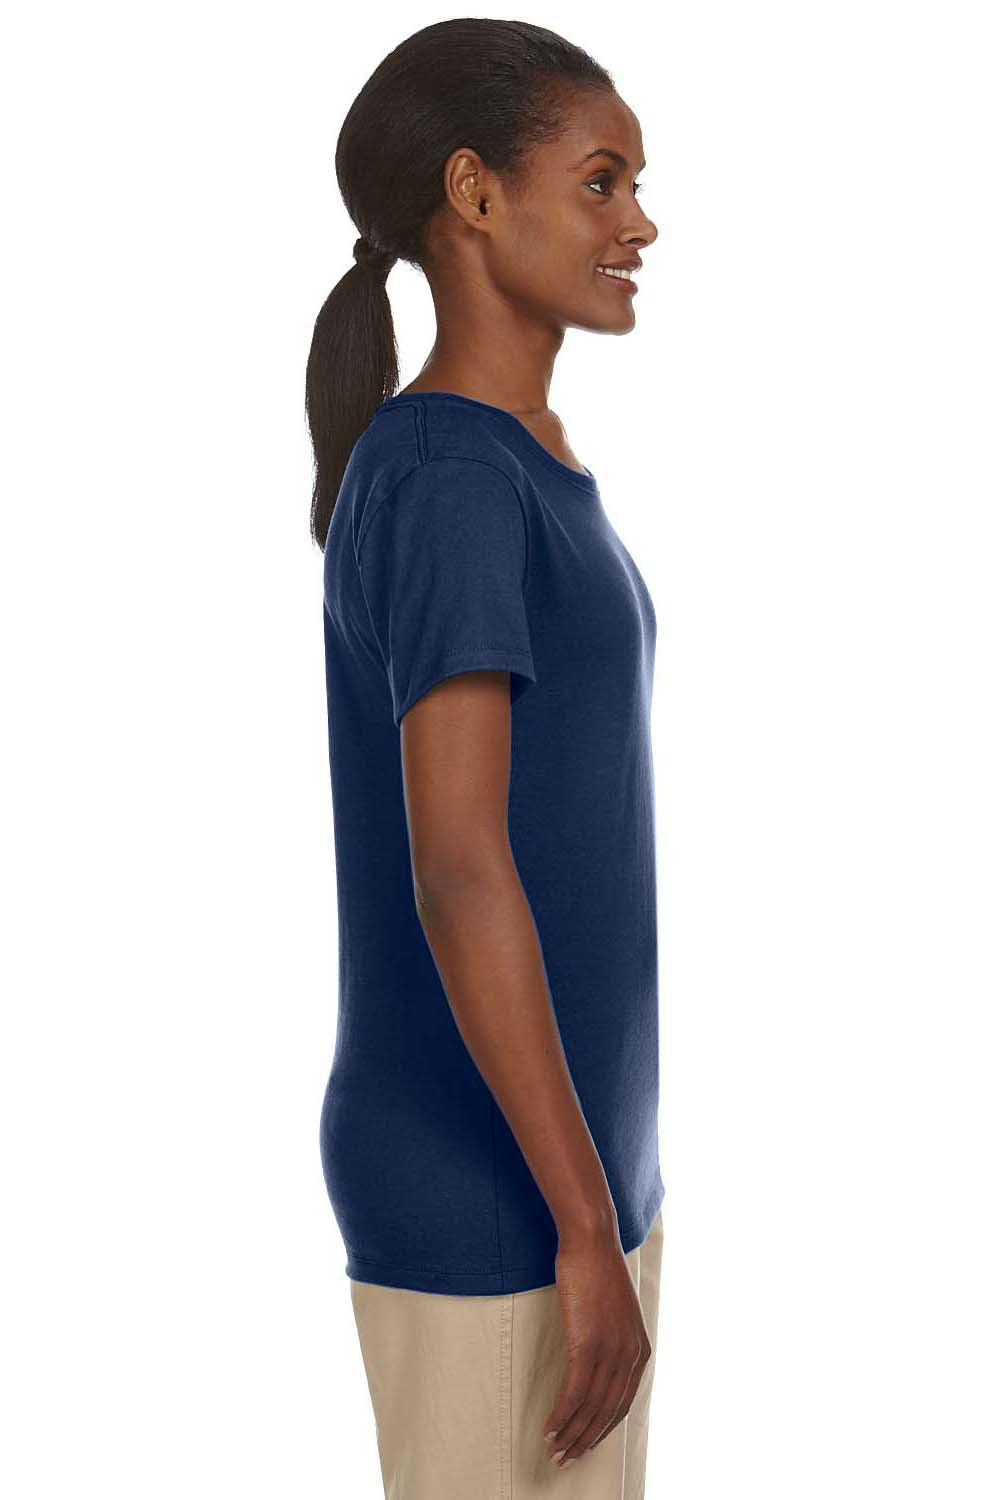 Jerzees 29WR Womens Dri-Power Moisture Wicking Short Sleeve Crewneck T-Shirt Navy Blue Side